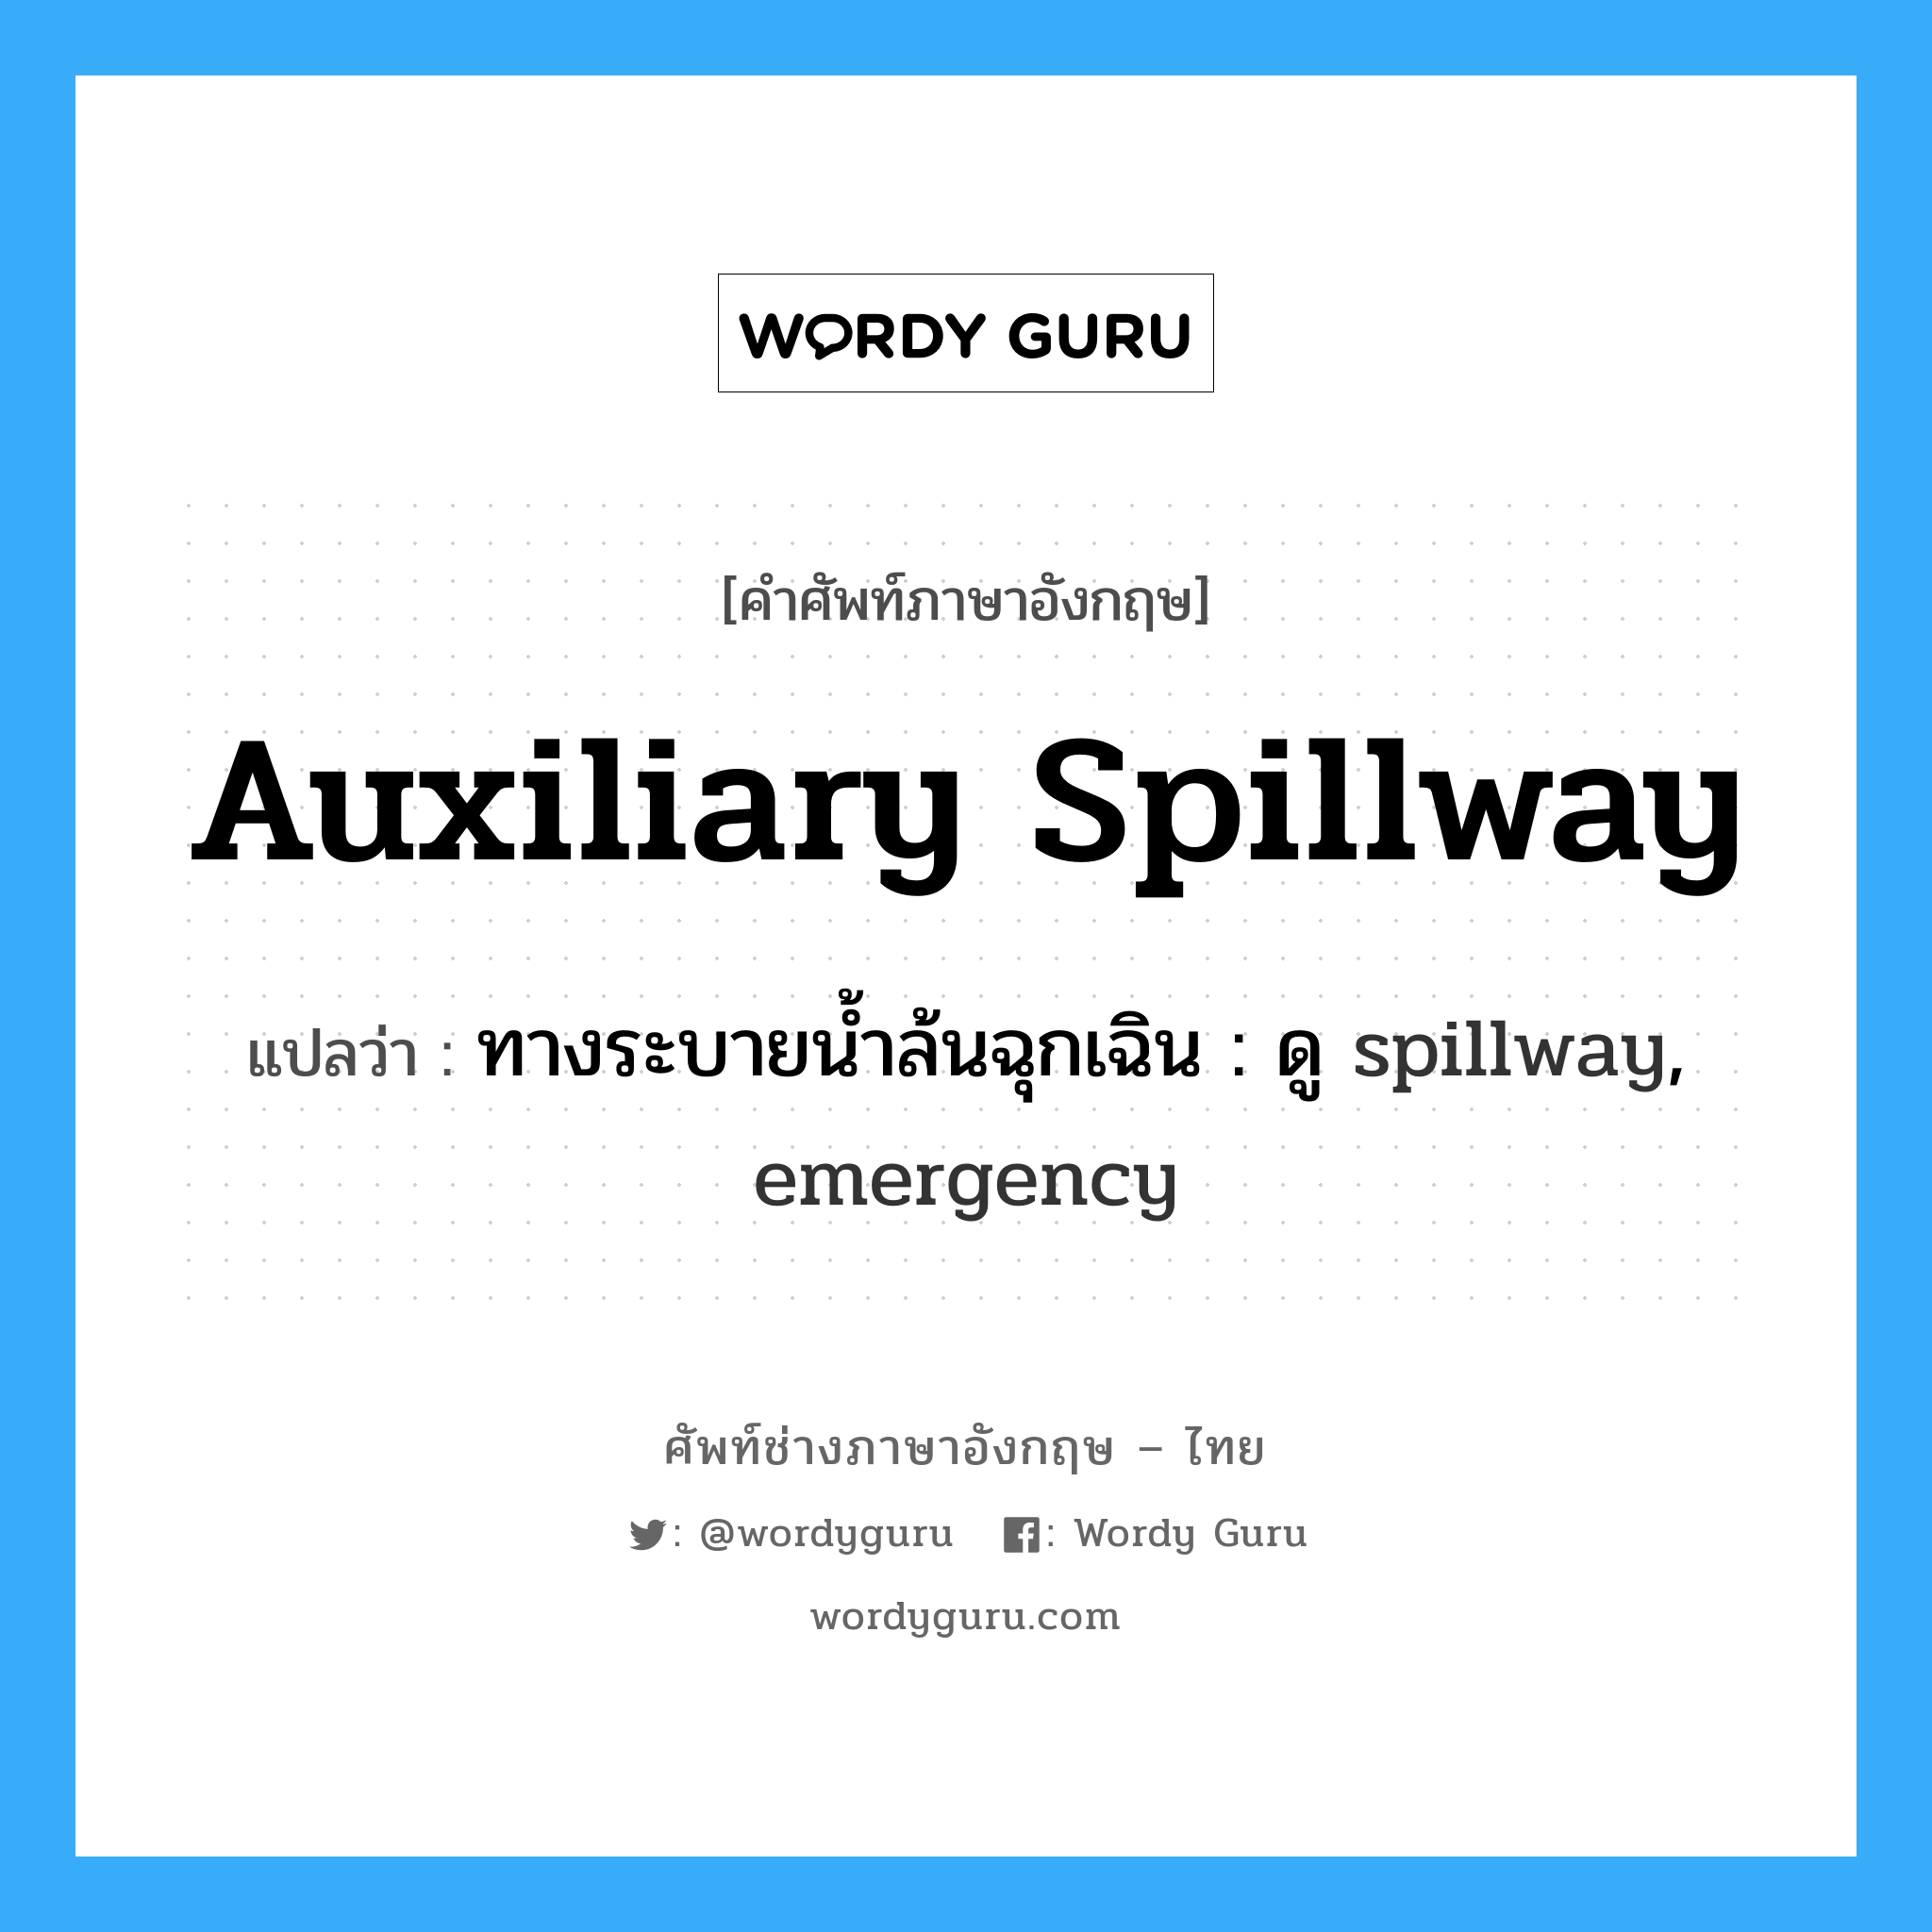 ทางระบายน้ำล้นฉุกเฉิน : ดู spillway, emergency ภาษาอังกฤษ?, คำศัพท์ช่างภาษาอังกฤษ - ไทย ทางระบายน้ำล้นฉุกเฉิน : ดู spillway, emergency คำศัพท์ภาษาอังกฤษ ทางระบายน้ำล้นฉุกเฉิน : ดู spillway, emergency แปลว่า auxiliary spillway